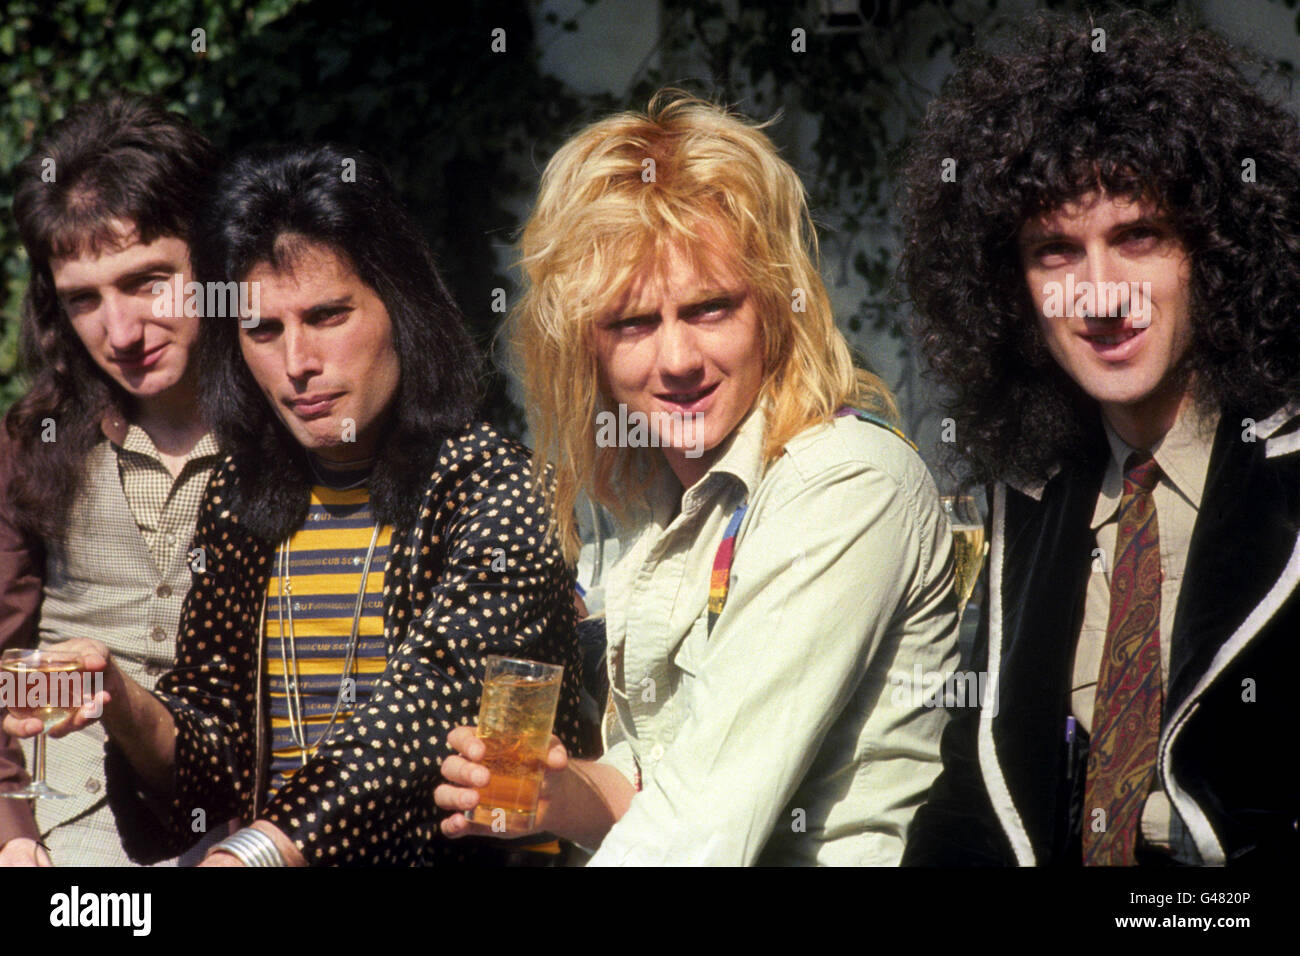 Le groupe de rock 'Queen' à Londres recevra un prix Platinum , Gold et Silver de l'Institut phonographique britannique pour ses ventes record. (l-r) John Deacon, Freddie Mercury, Roger Taylor et Brian May. Banque D'Images